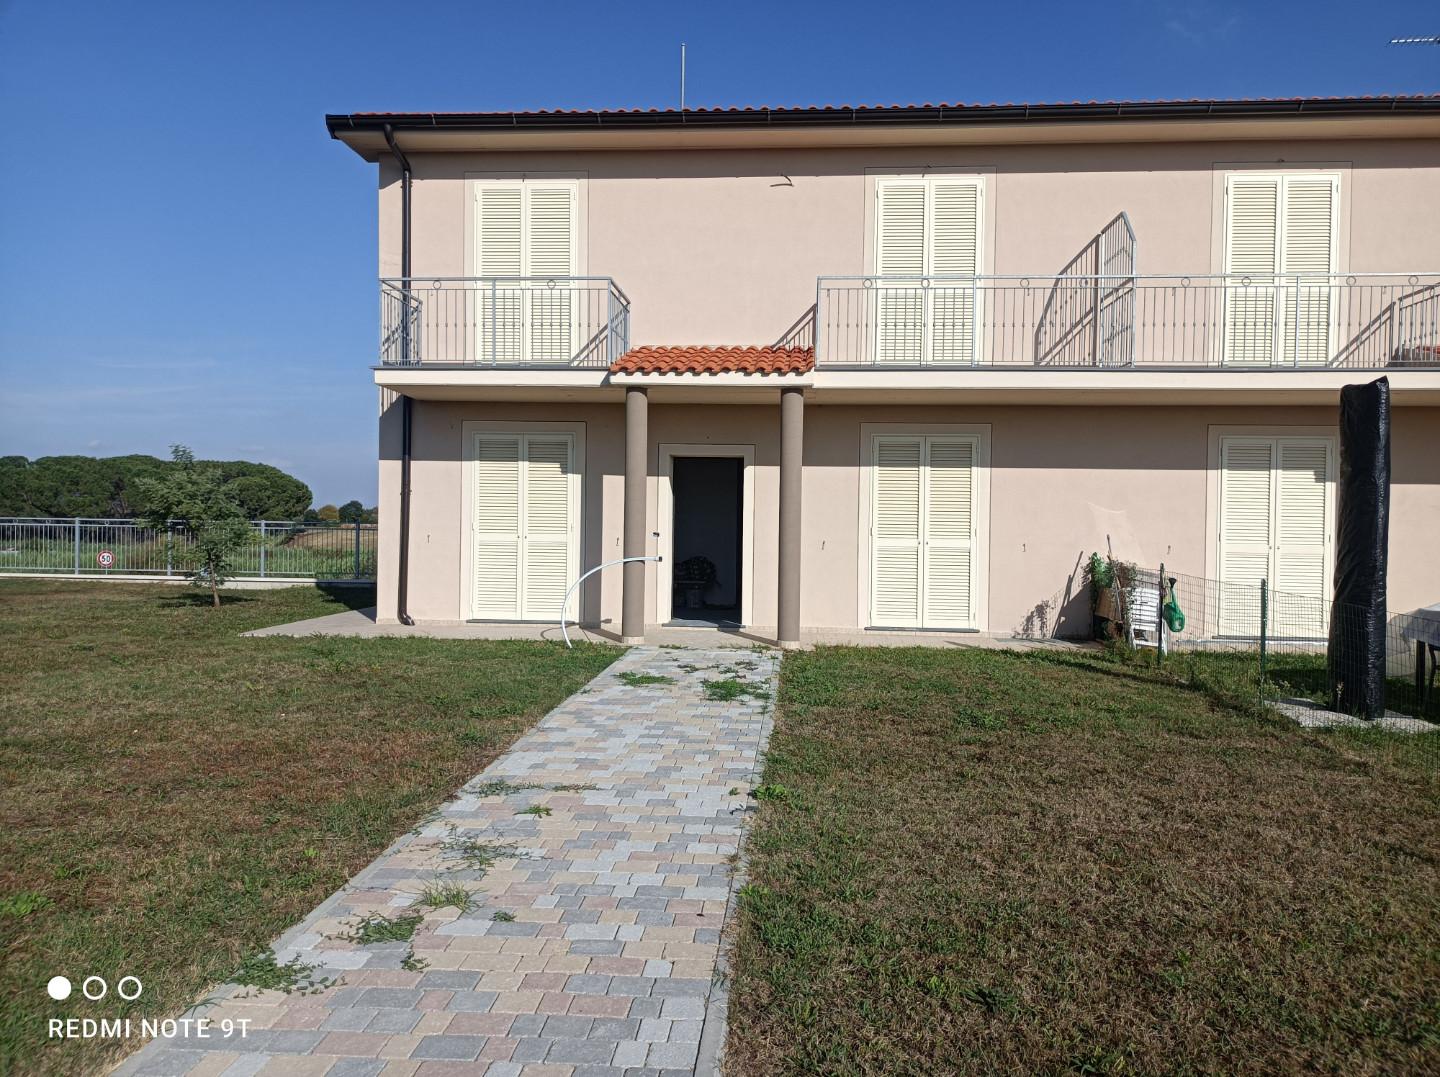 Villa a Schiera in vendita a Casciana Terme Lari, 8 locali, prezzo € 360.000 | PortaleAgenzieImmobiliari.it